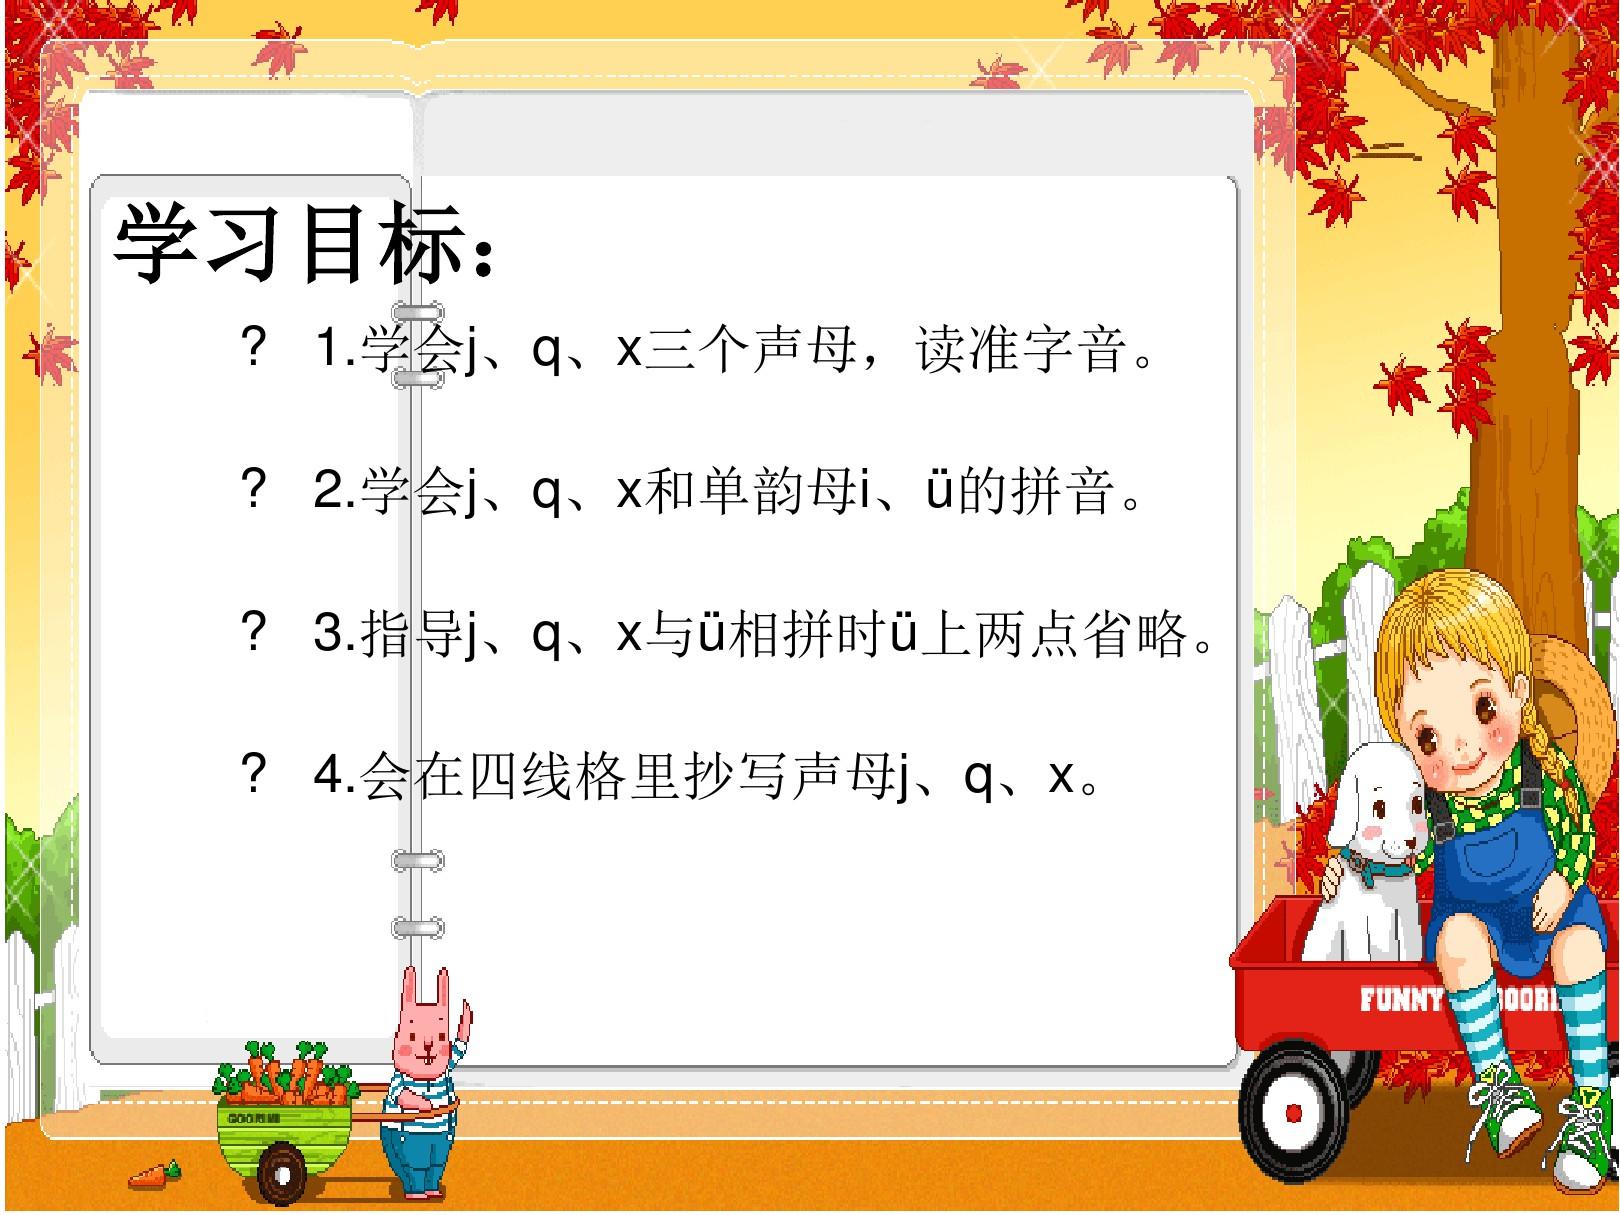 一年级上册汉语拼音jqx